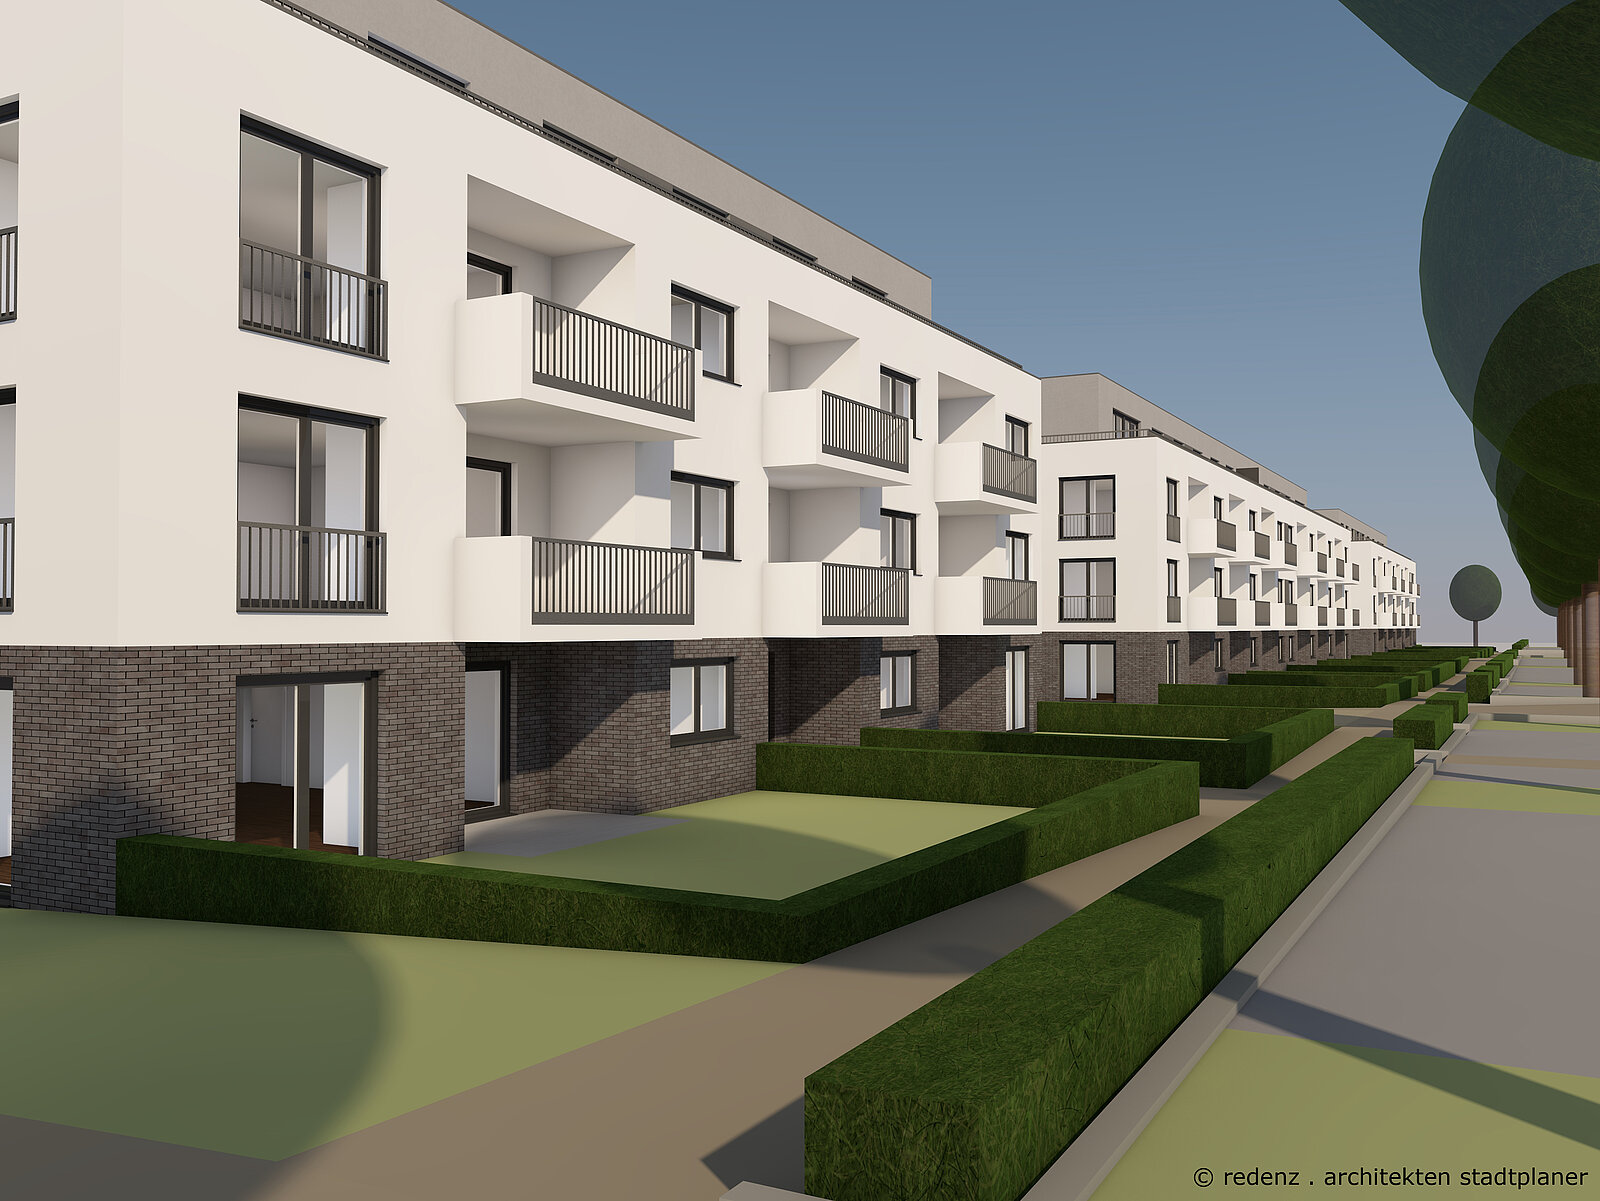 Visualisierung des Neubauprojekts "Welcome HoMe": Detailansicht der Balkone und Terassen